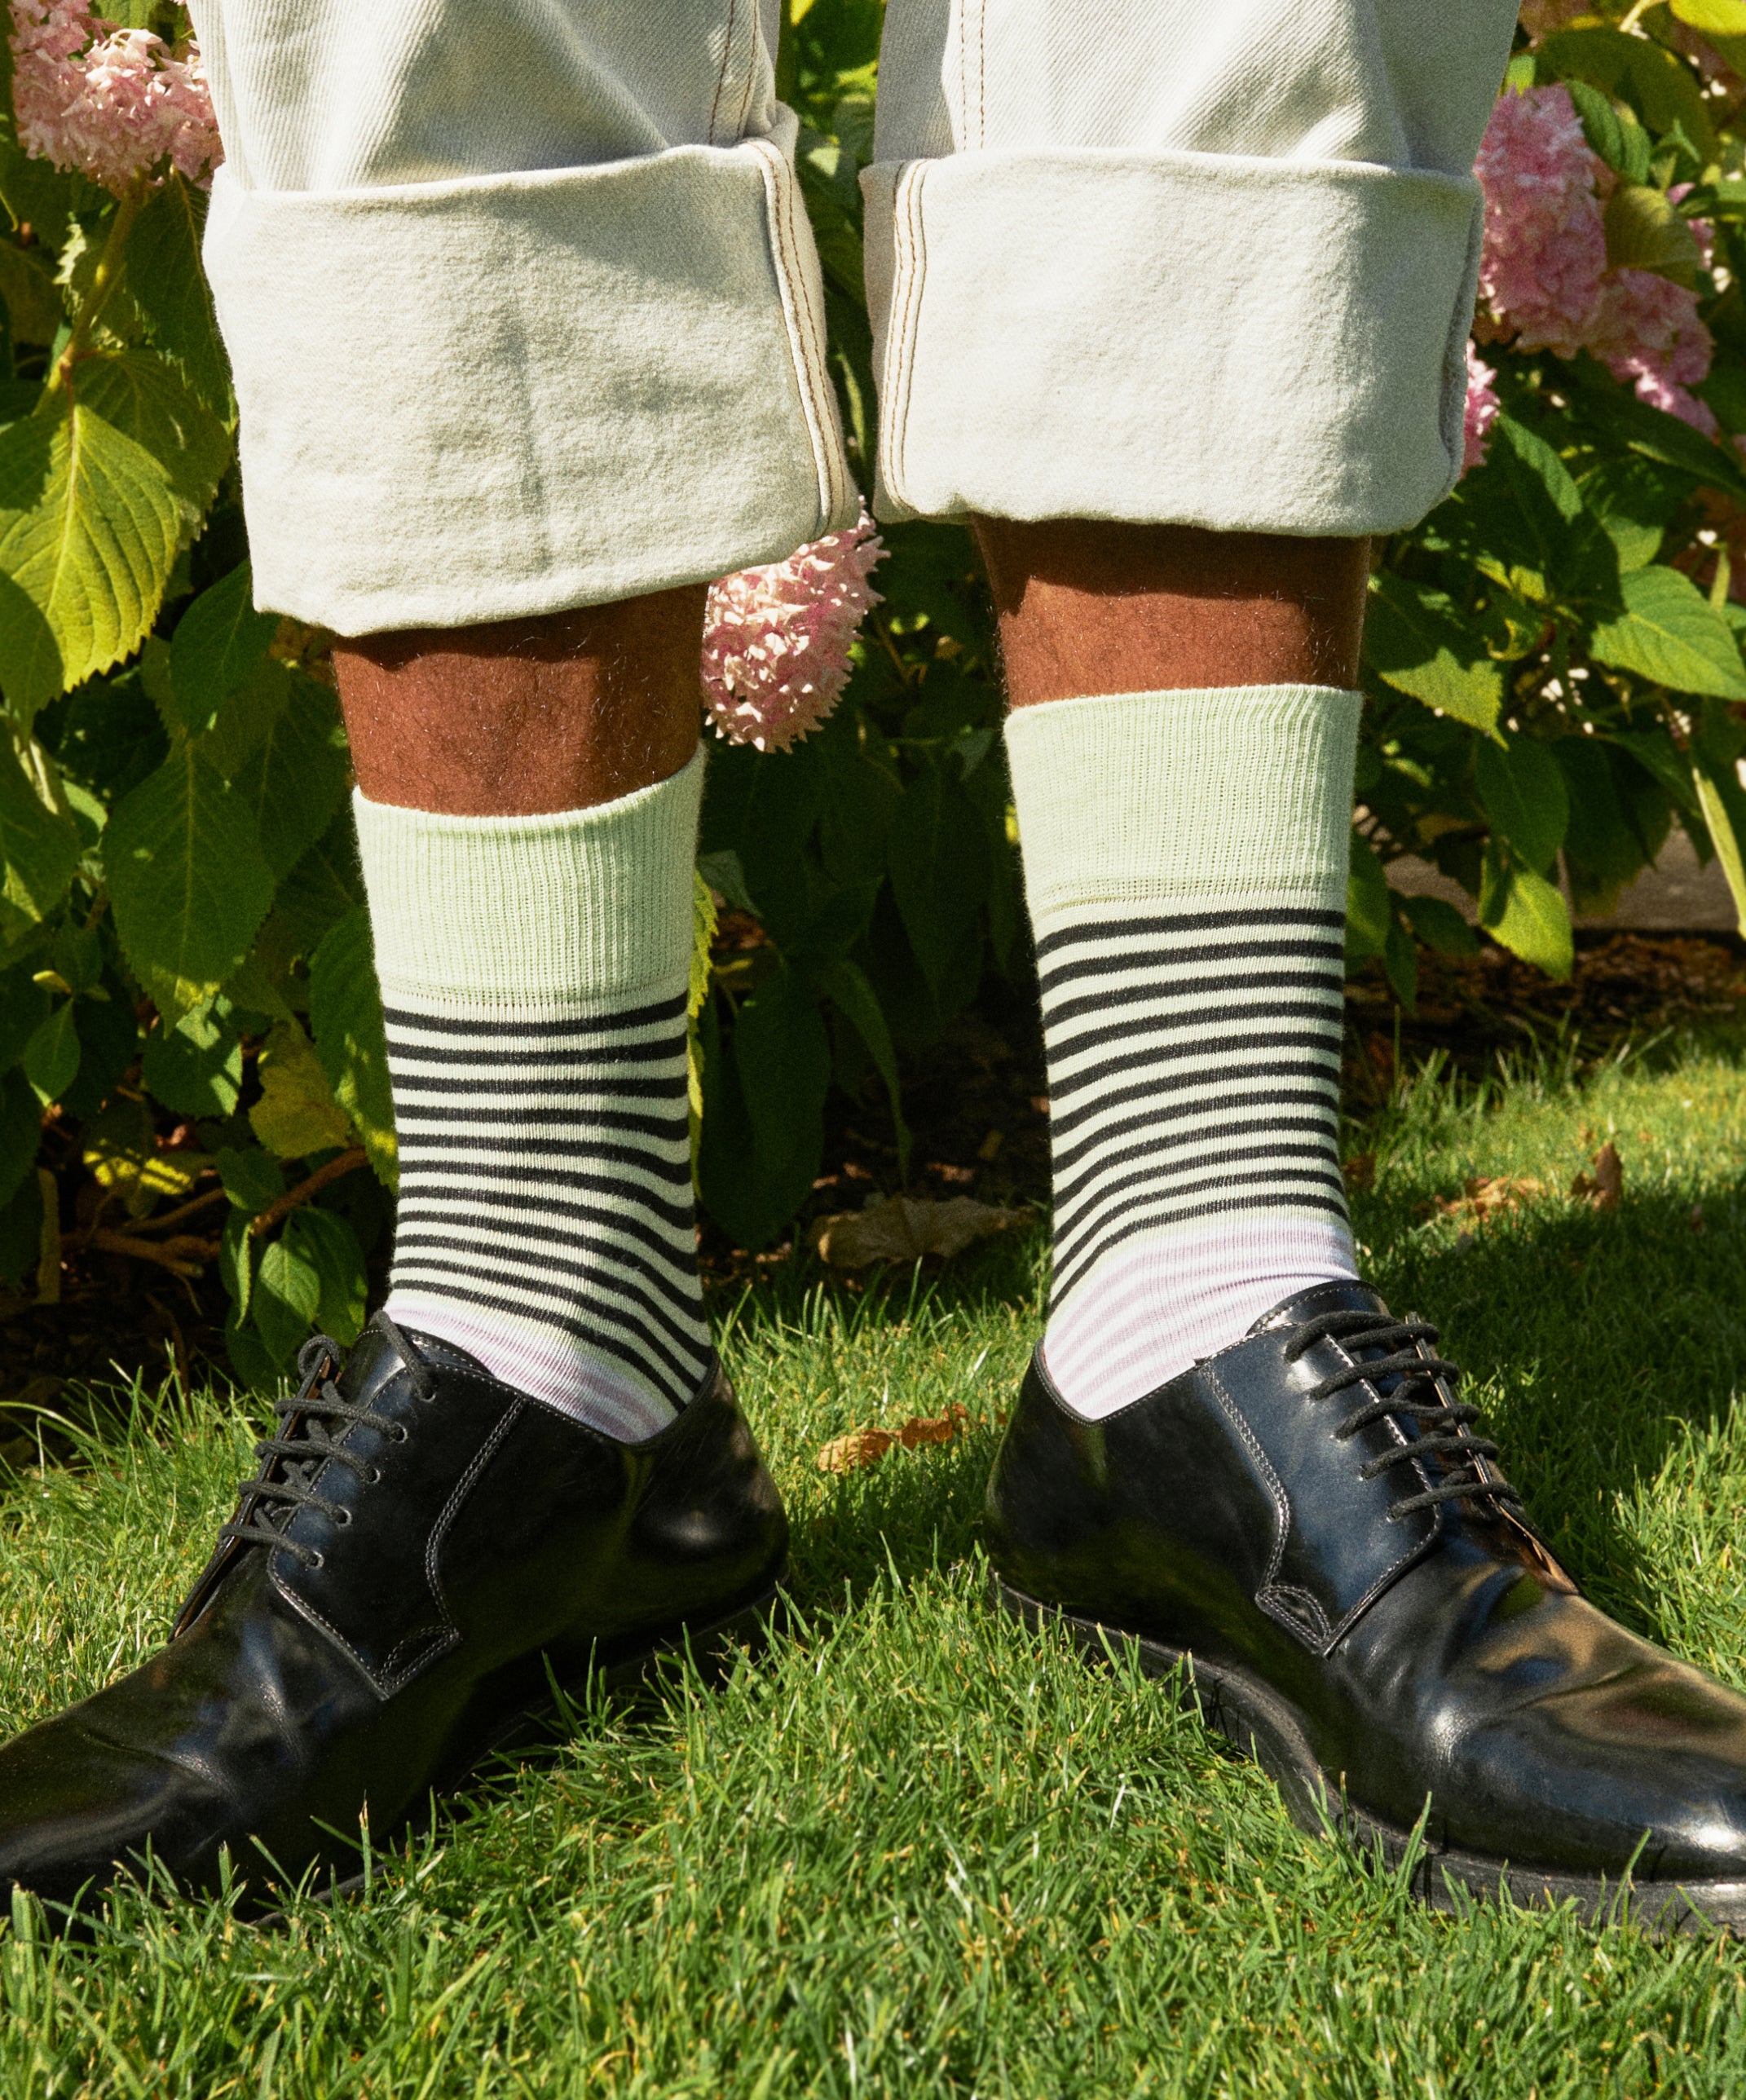 Socken mit Streifen aus Bio-Baumwolle – Four Mation